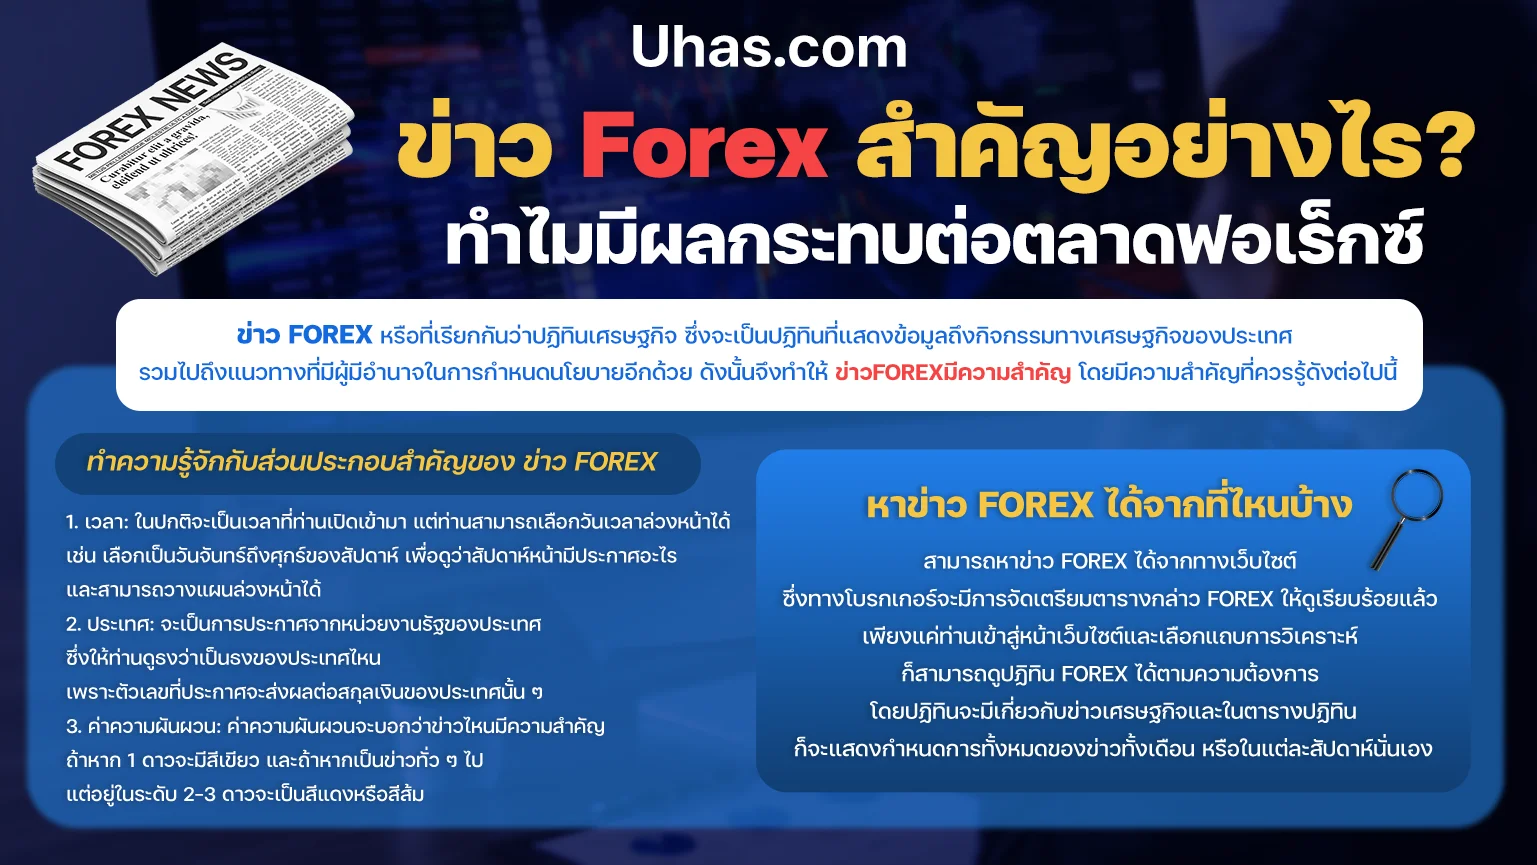 ความสำคัญของข่าว Forex